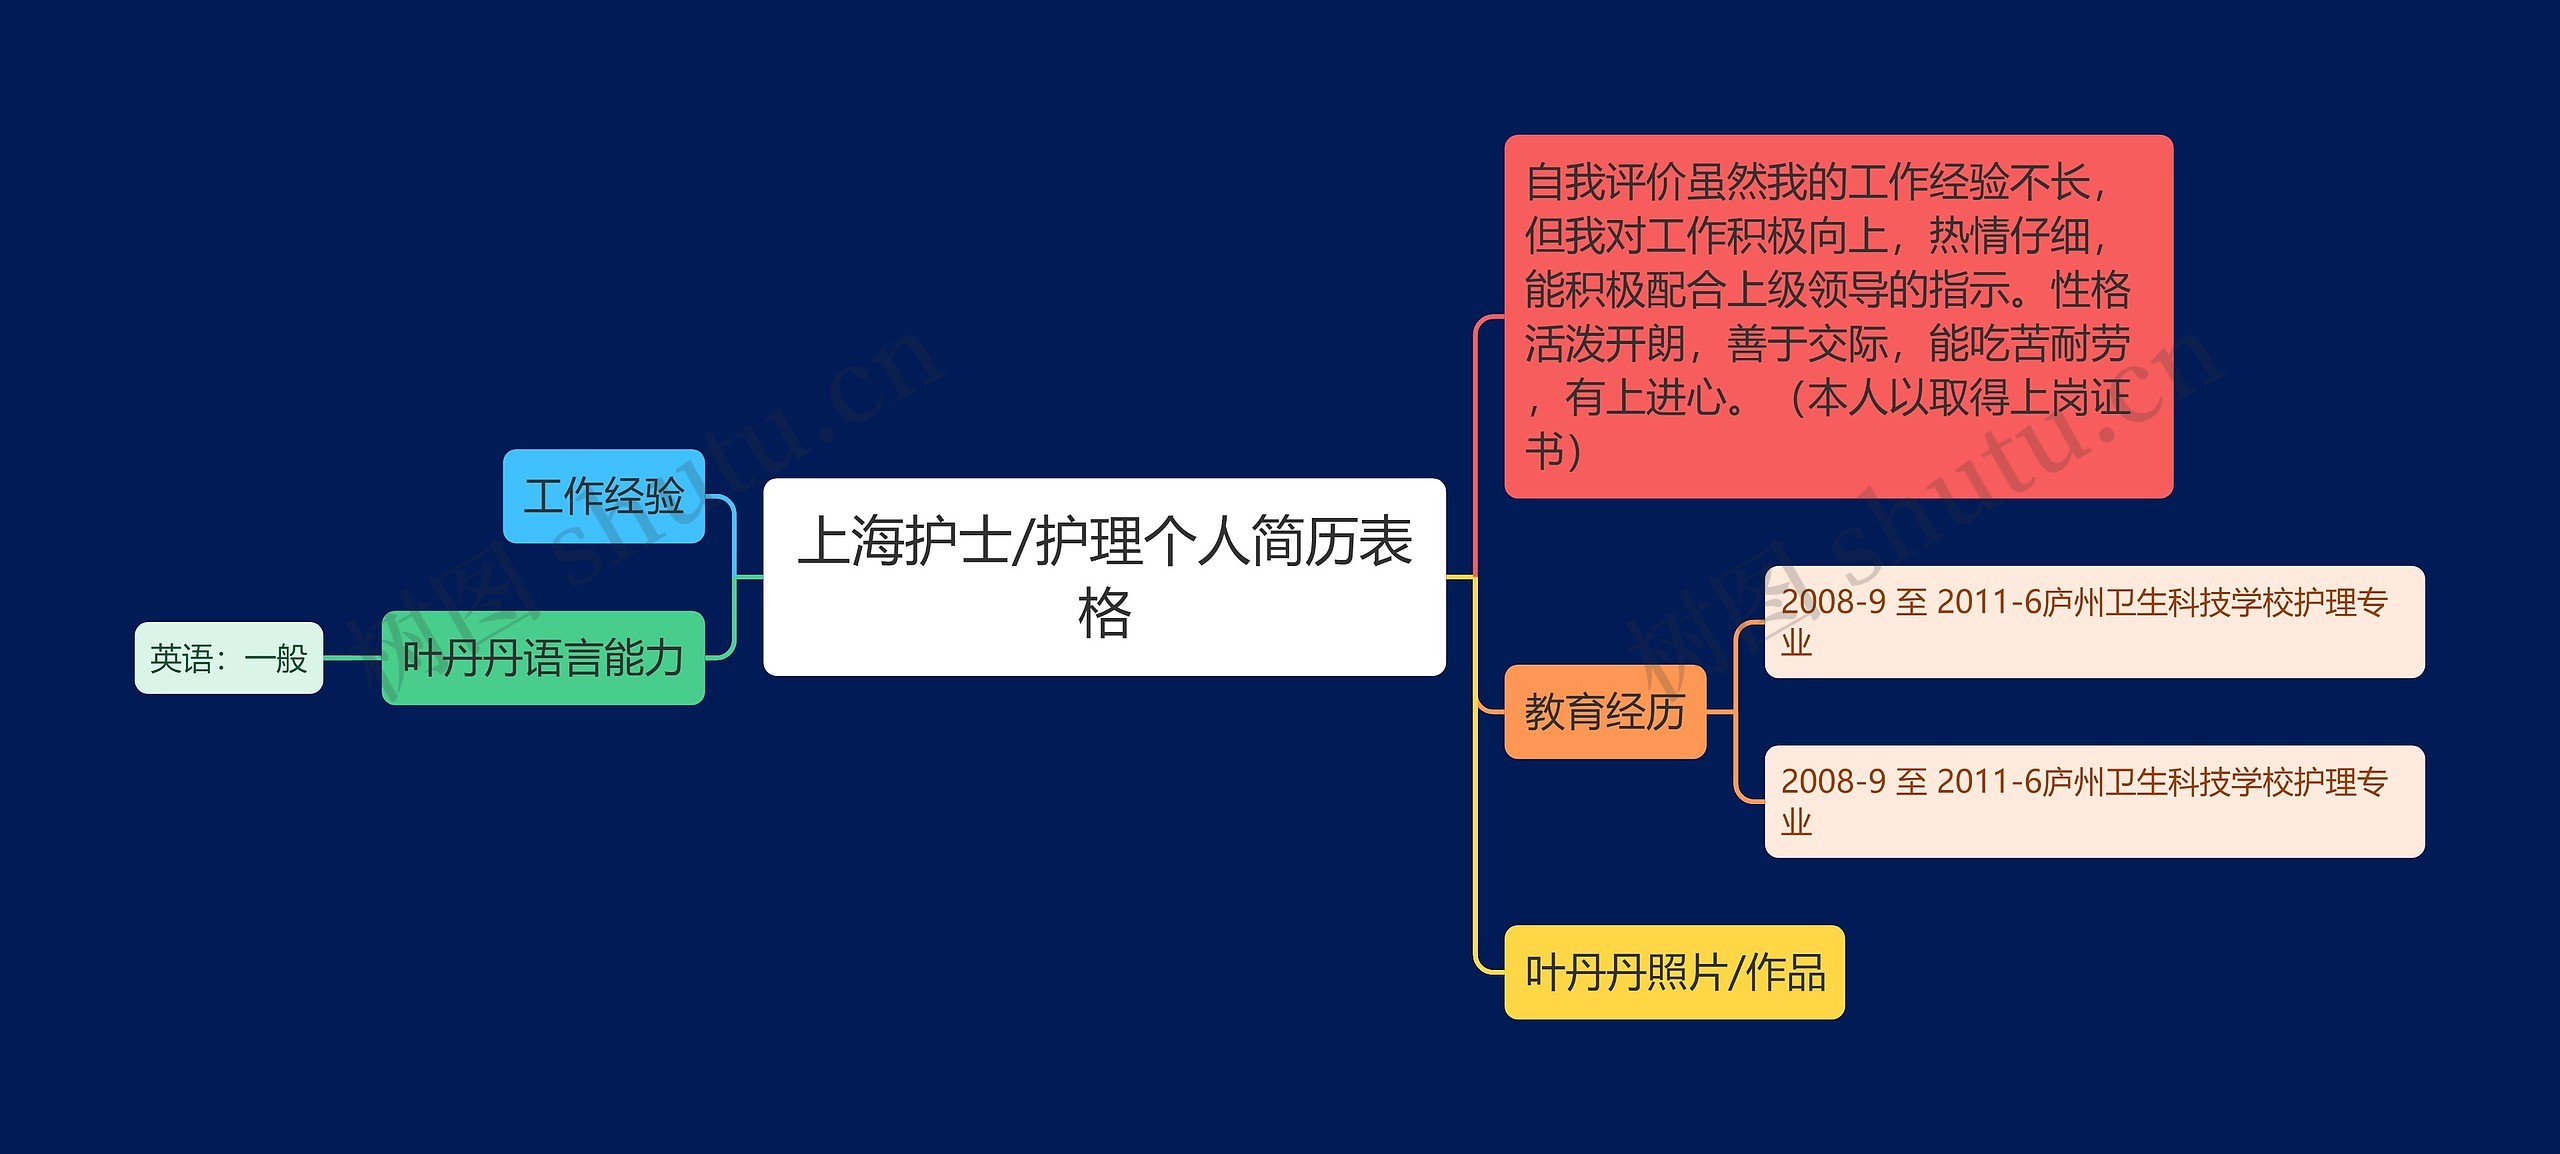 上海护士/护理个人简历表格思维导图